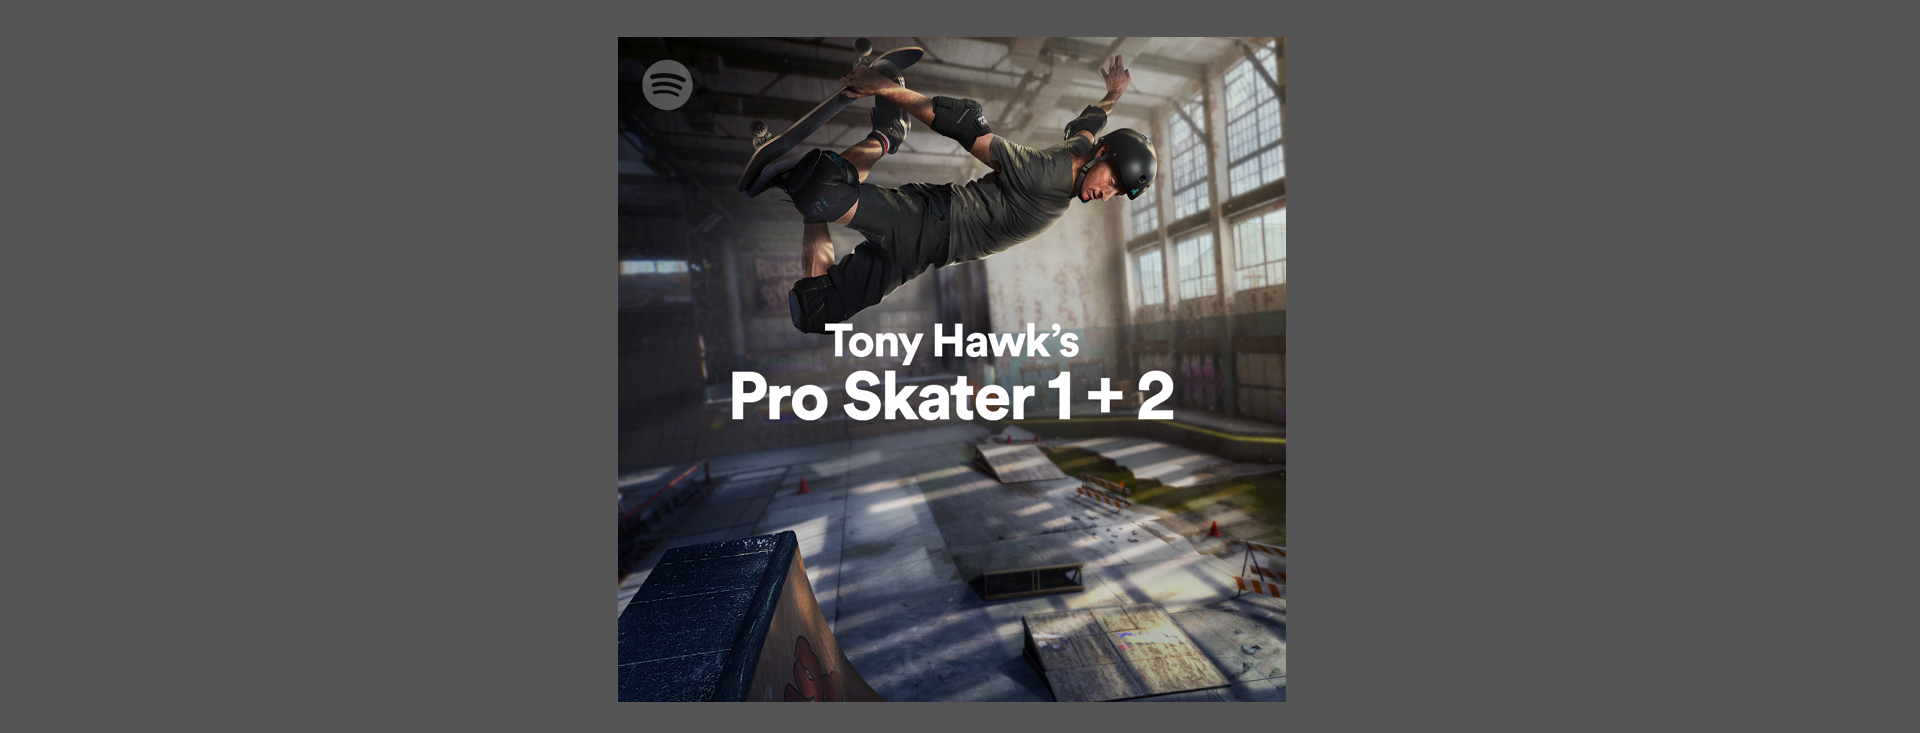 Tony Hawk’s Pro Skater 1 + 2 new soundtrack revealed